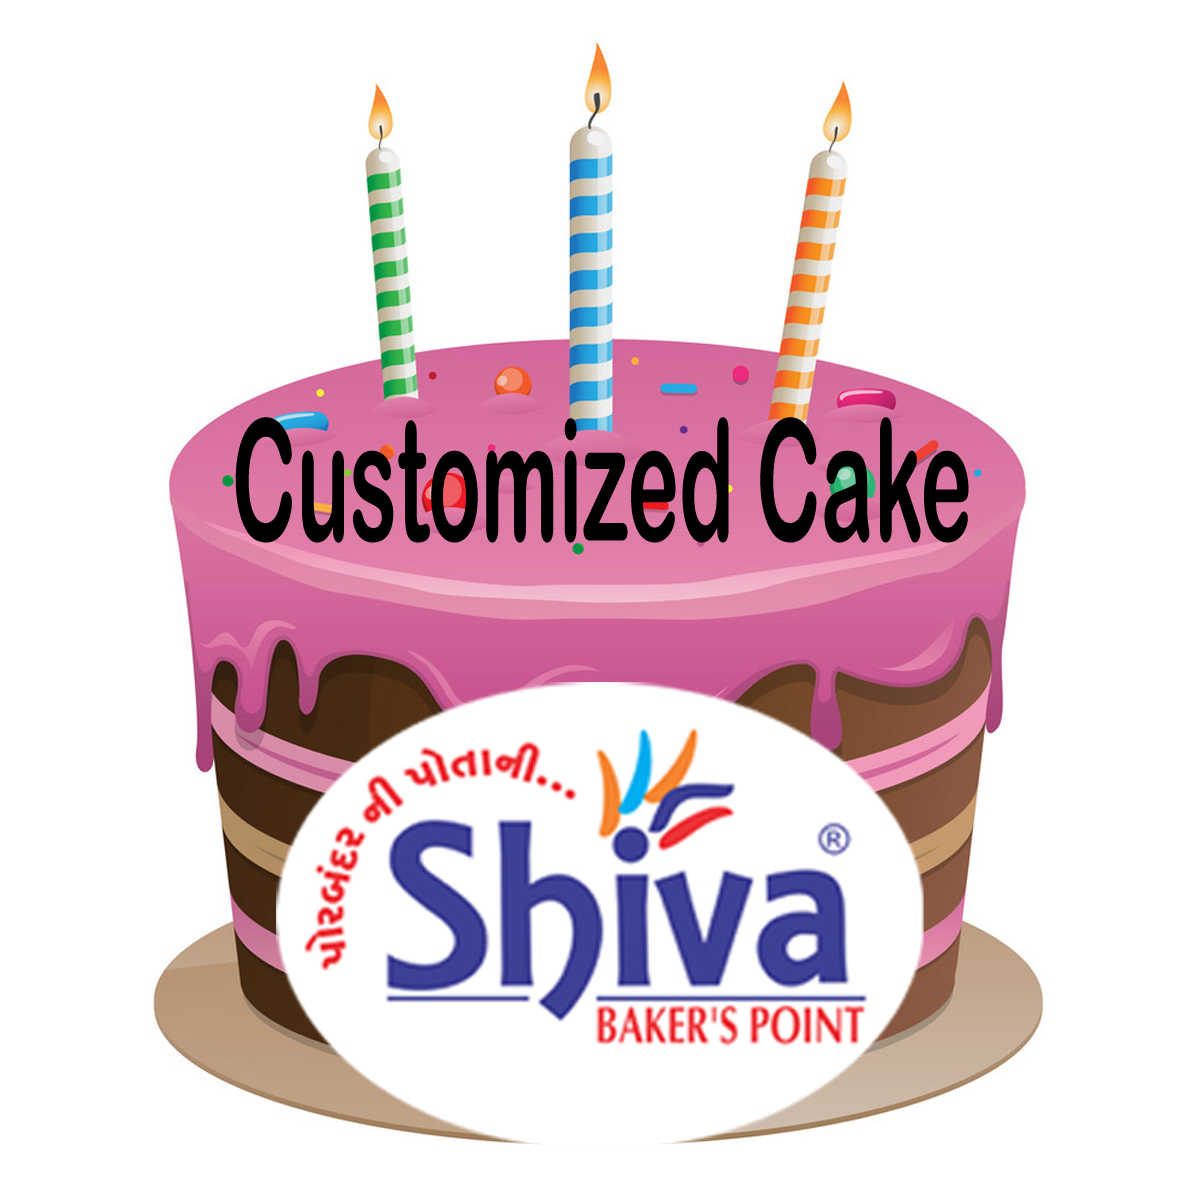 Customized Cake - Customized Cake 1400